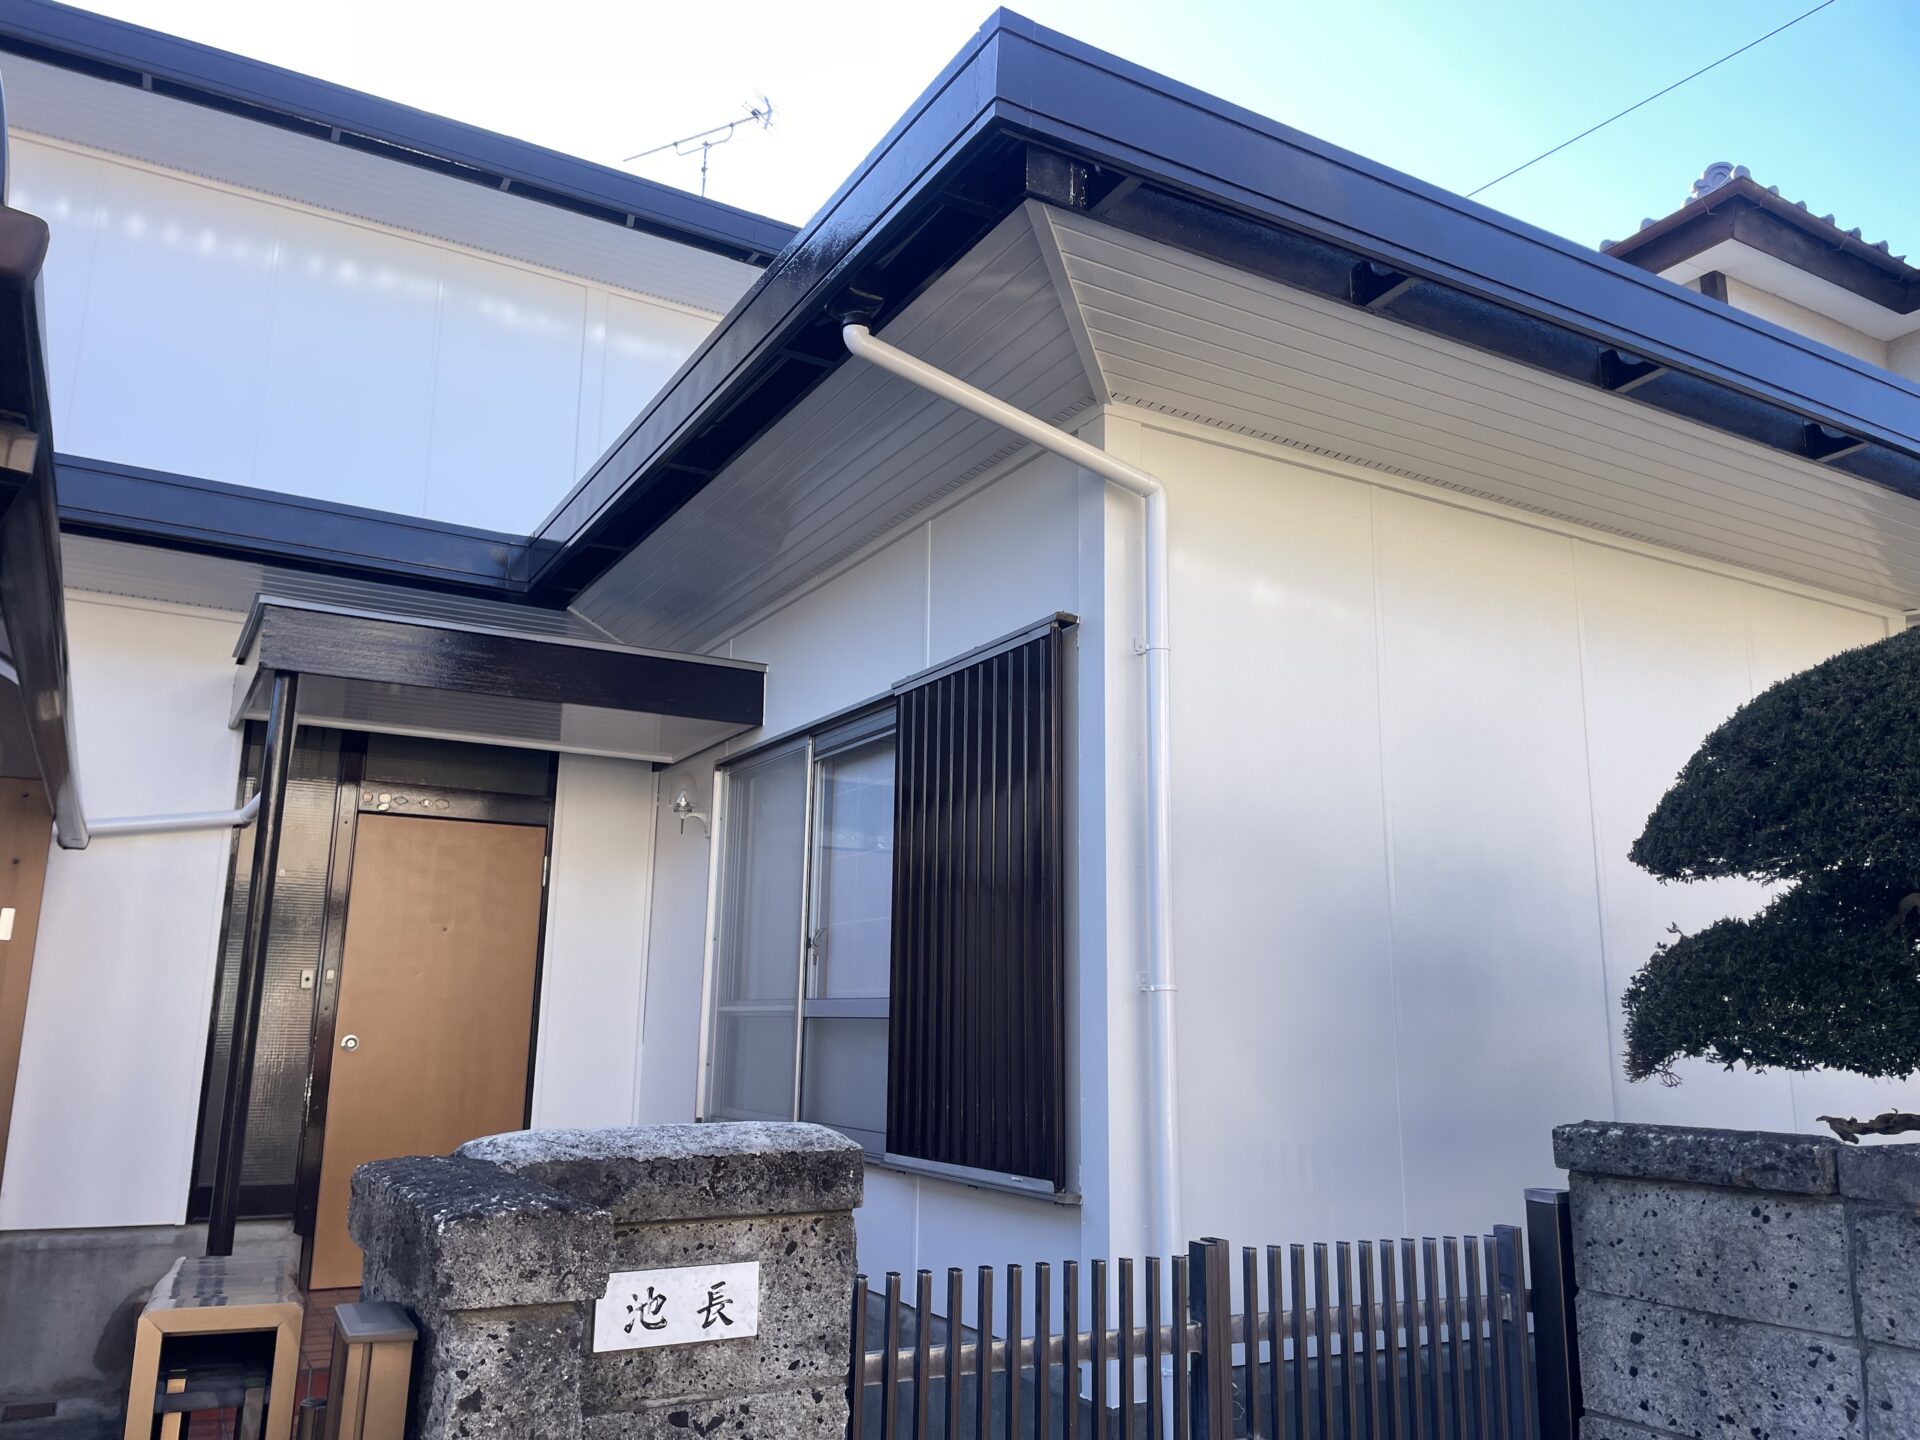 埼玉県川越市で屋根と外壁を無機ハイブリッド塗料で塗装を行いました！施工後